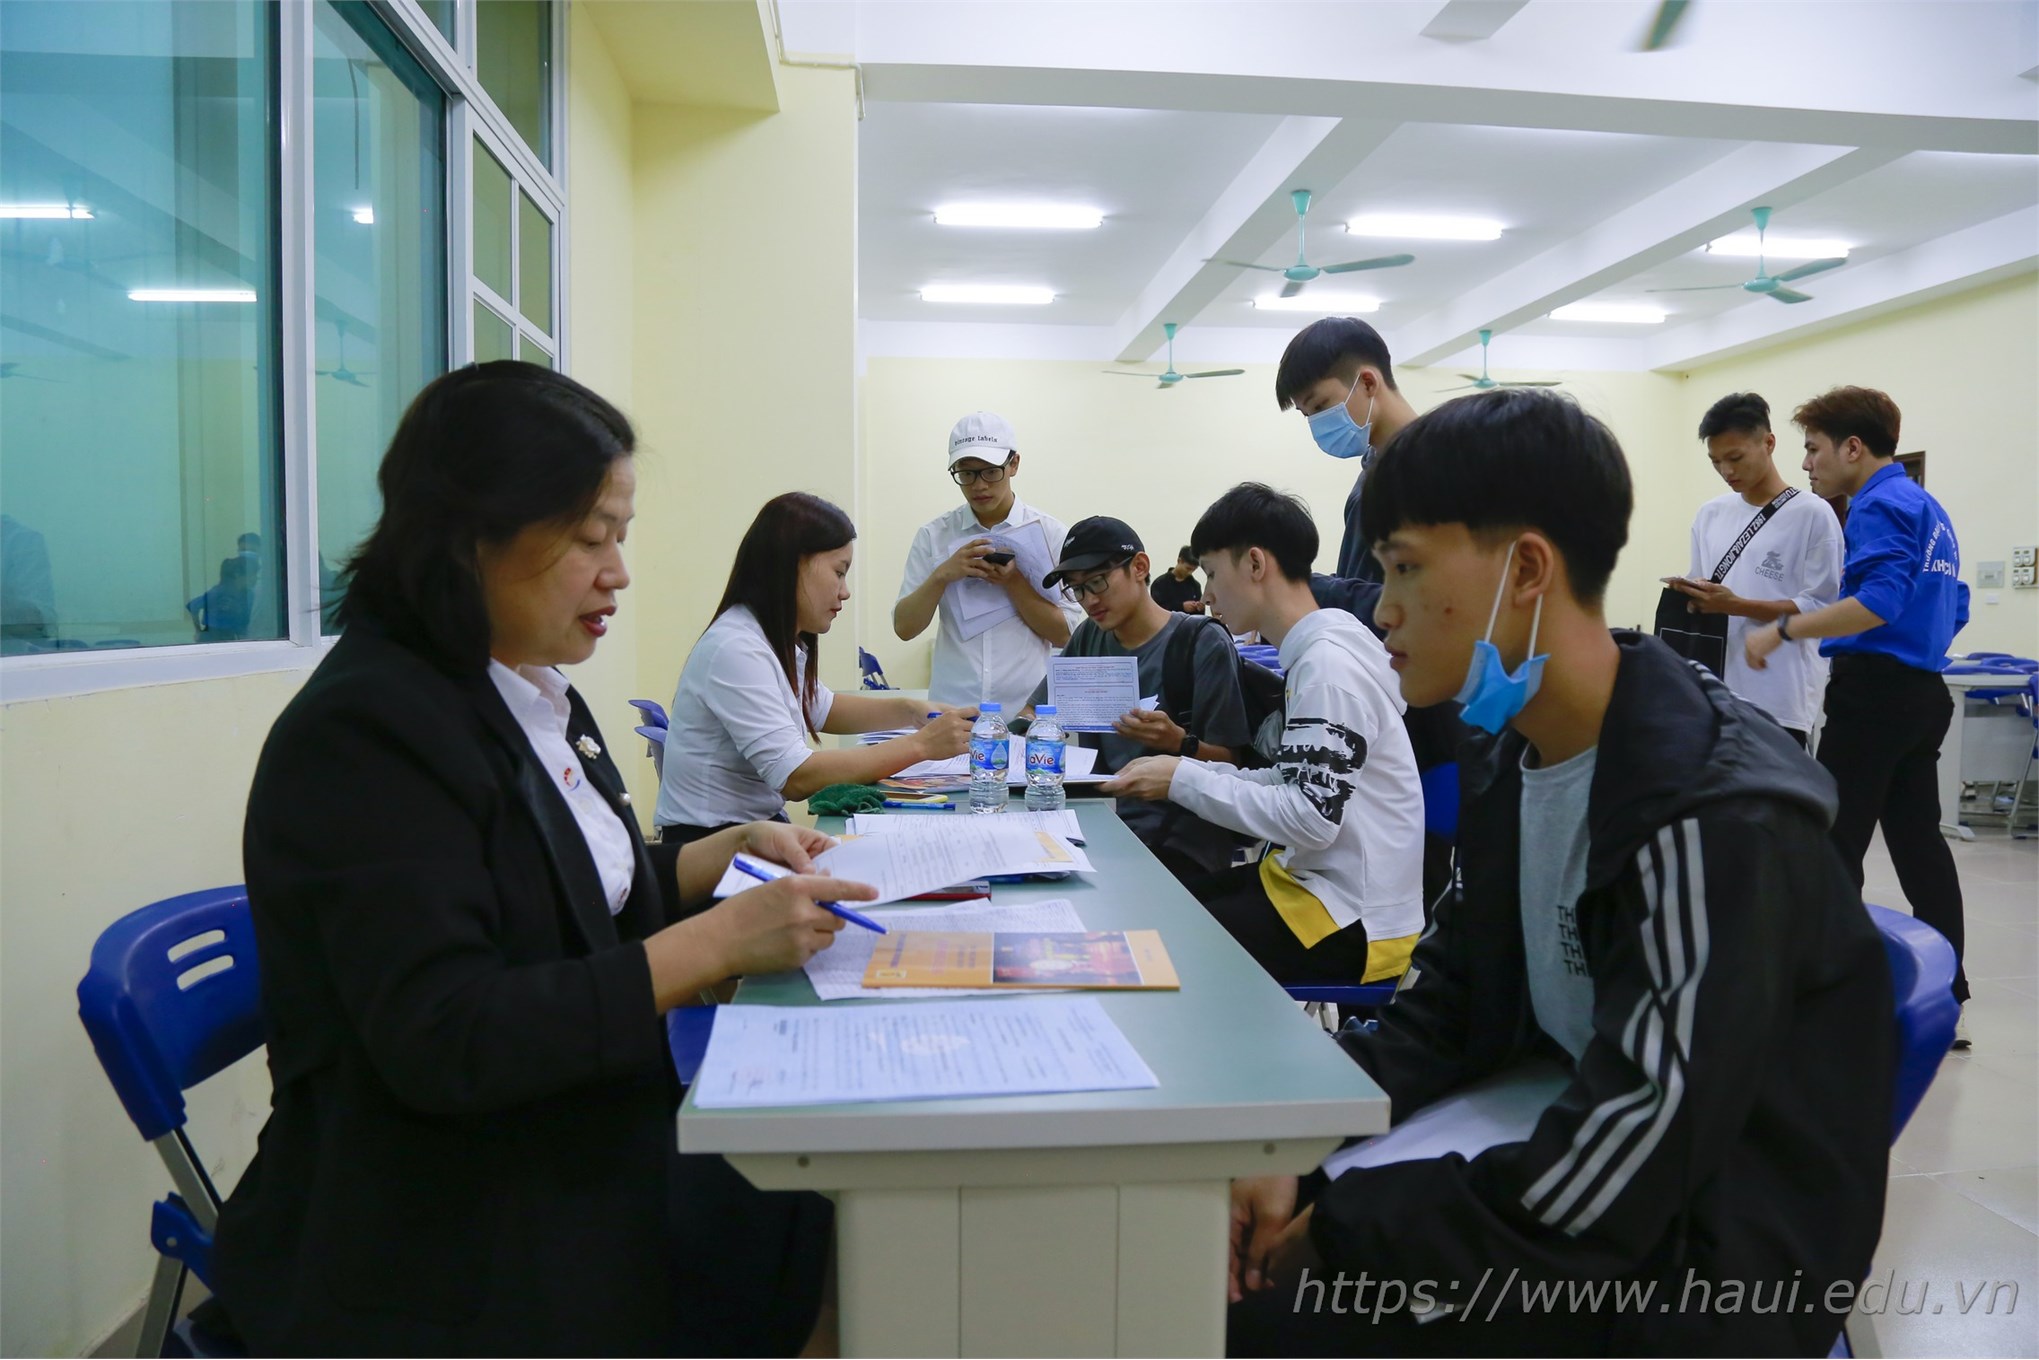 Over 7,000 freshmen join Hanoi University of Industry